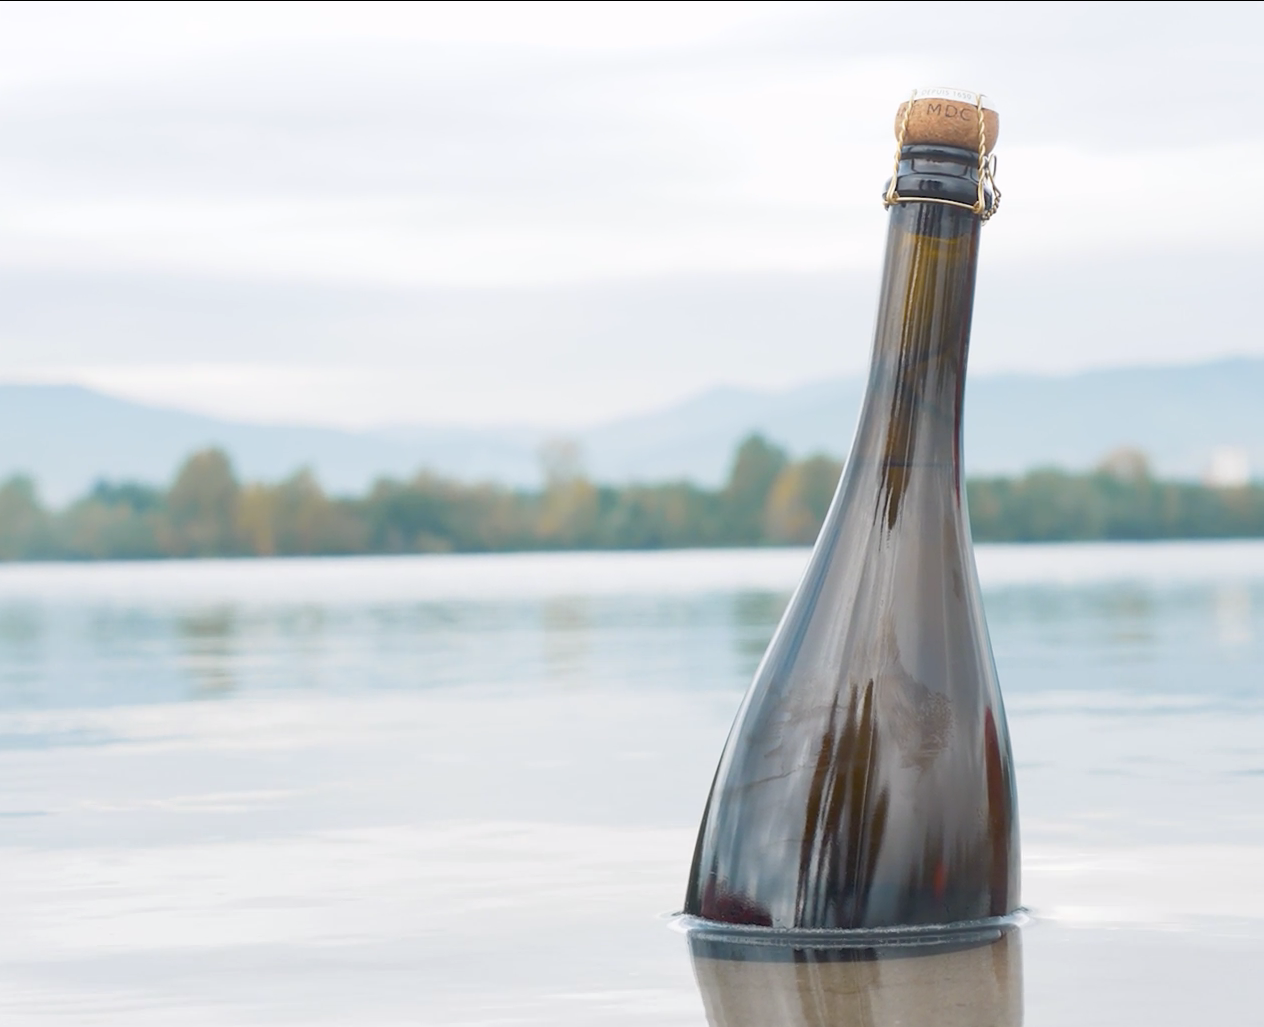 Près de 300 bouteilles de crémant d’Alsace du domaine Muré ont été immergées à 25 mètres de profondeur, sous l’eau de la base nautique de Colmar-Houss